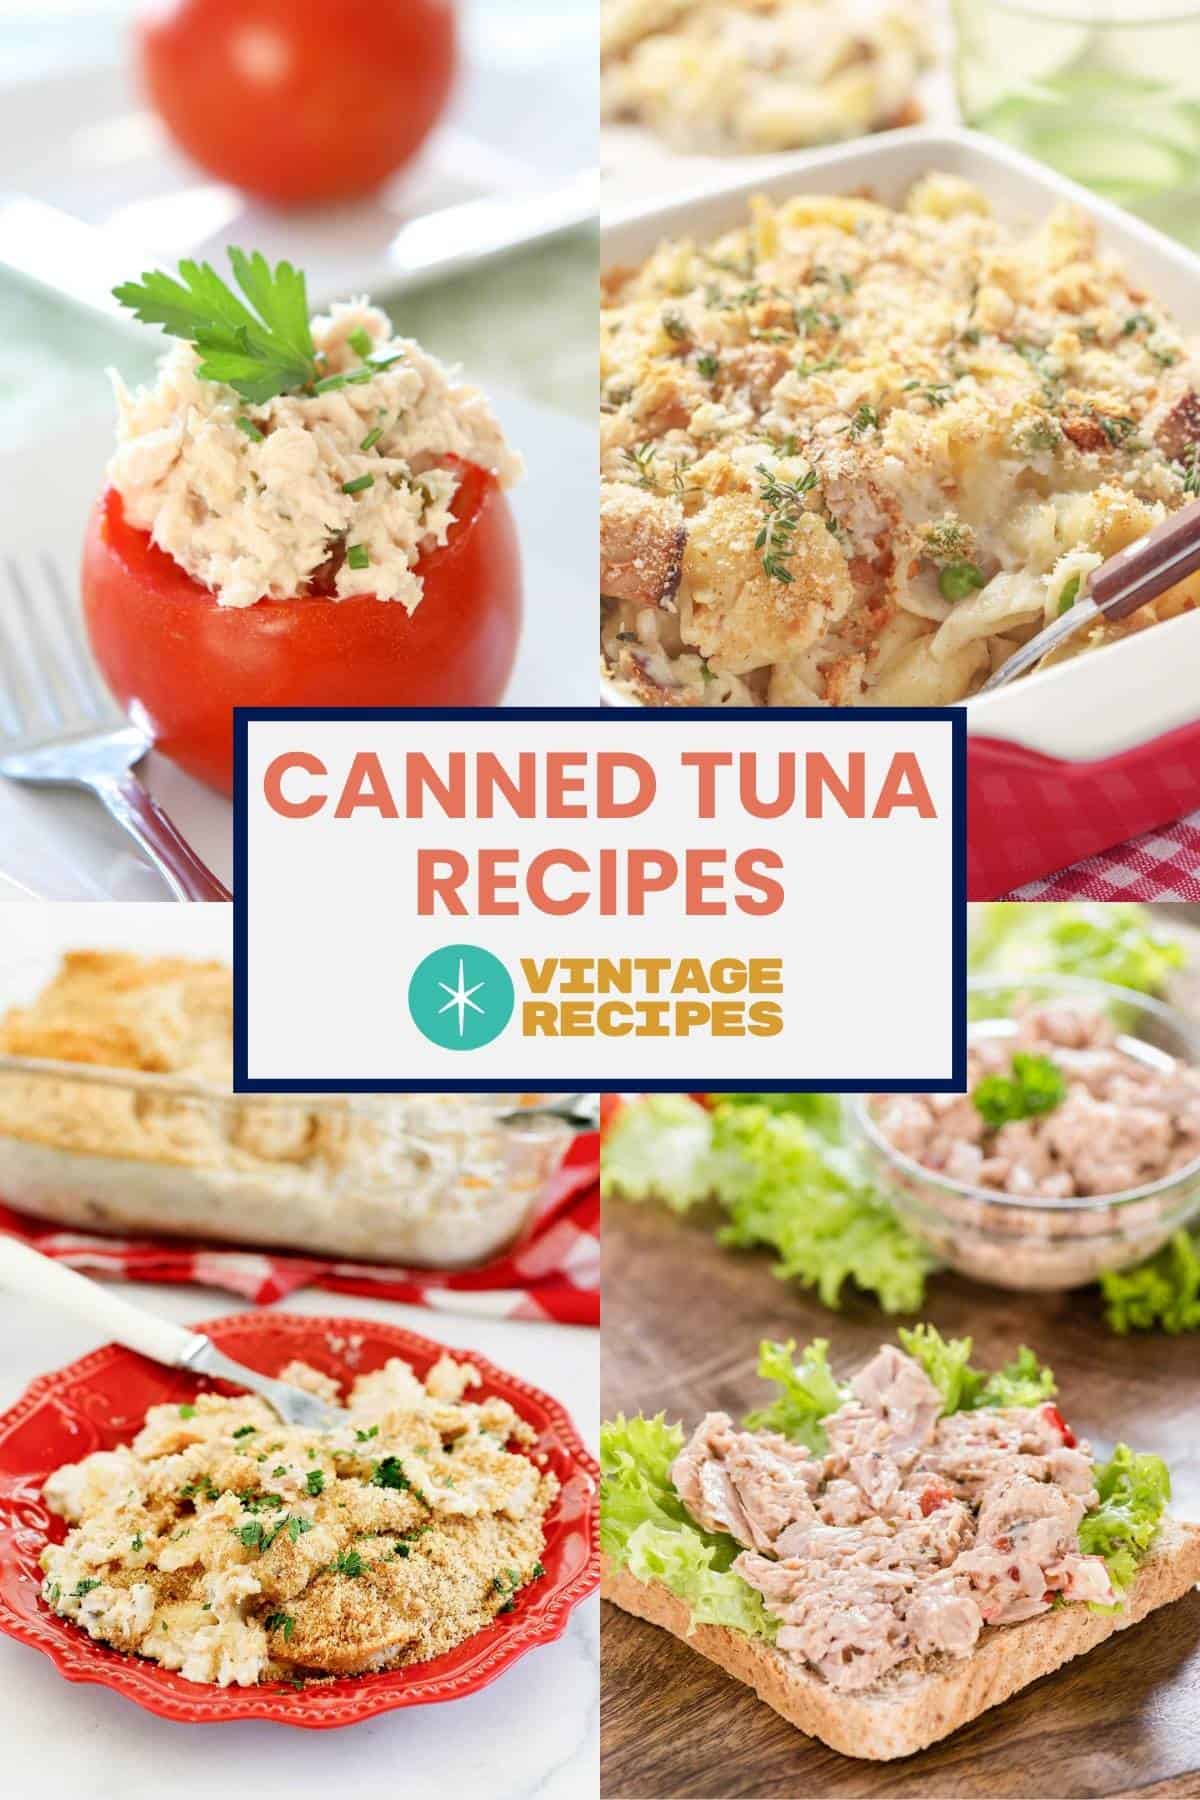 Tuna salad stuffed tomato, tuna casseroles, and tuna sandwich.